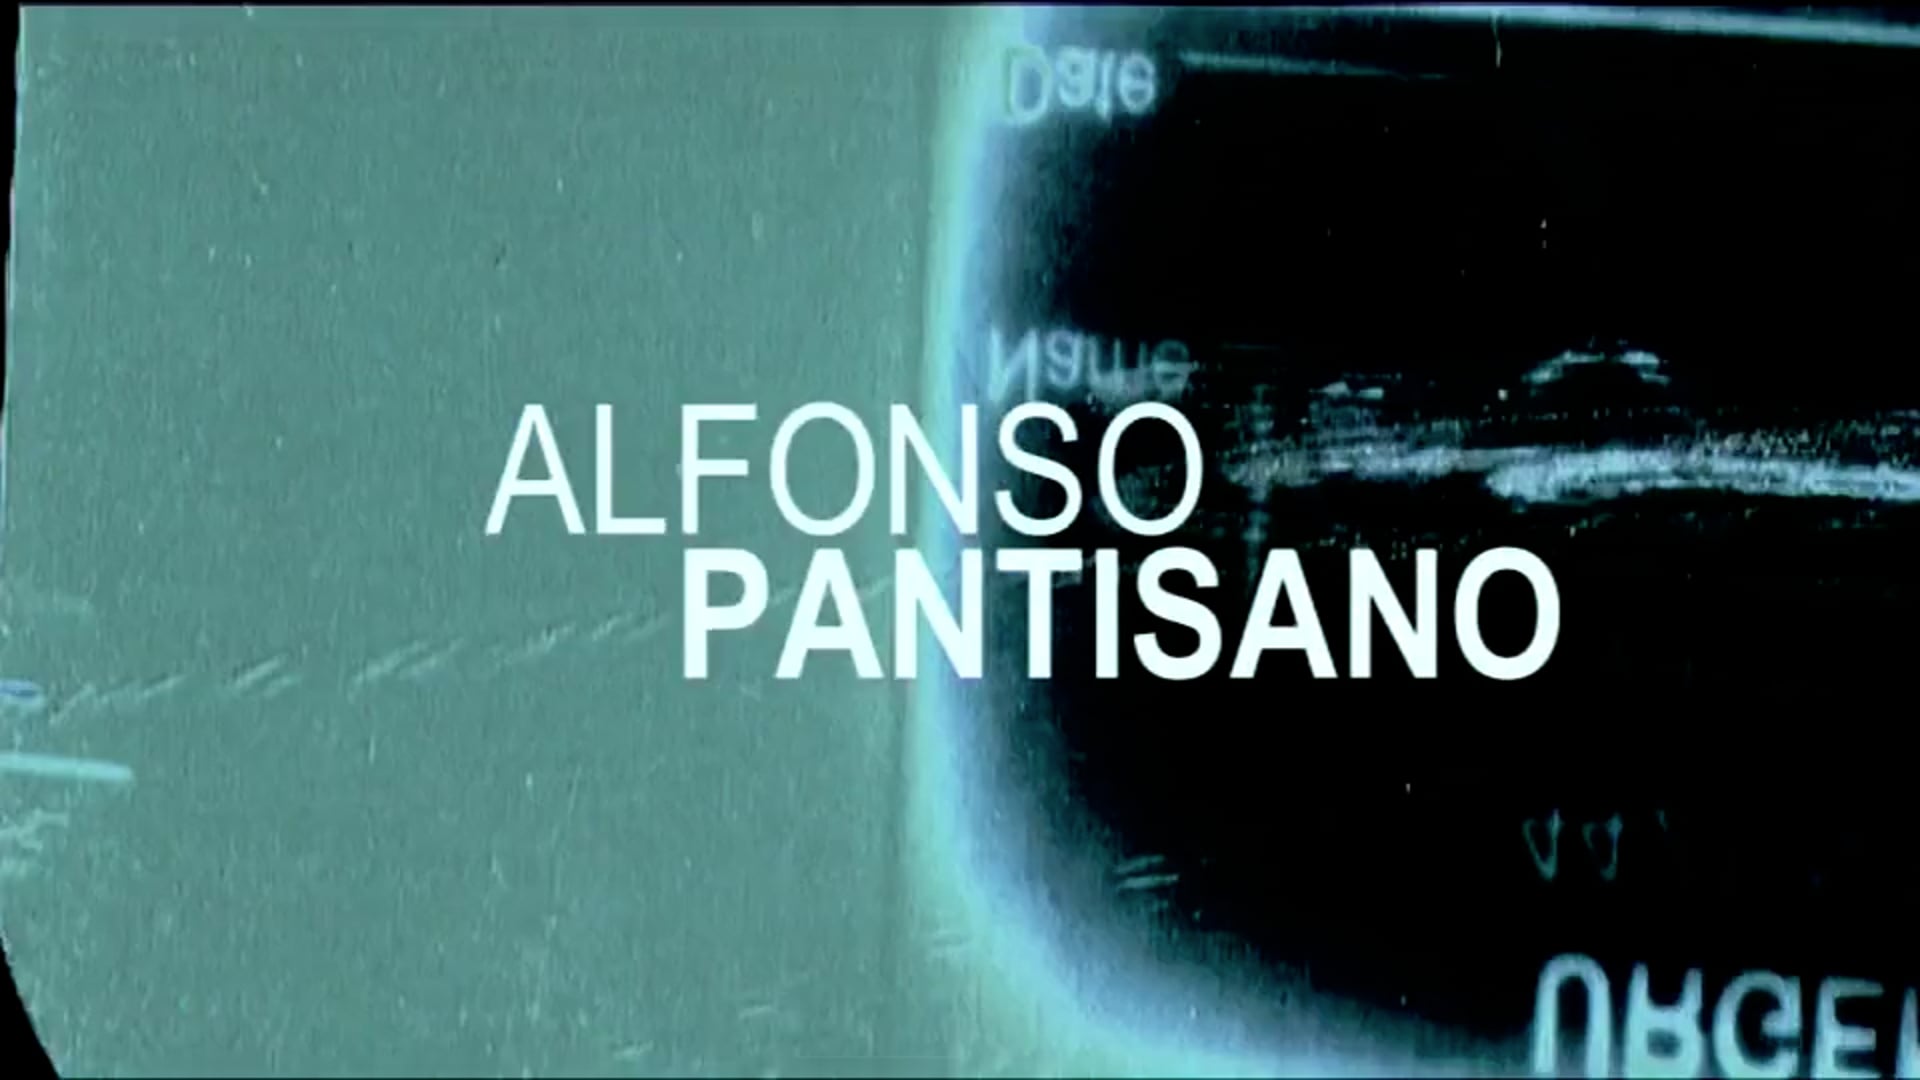 Alfonso Pantisano GEO